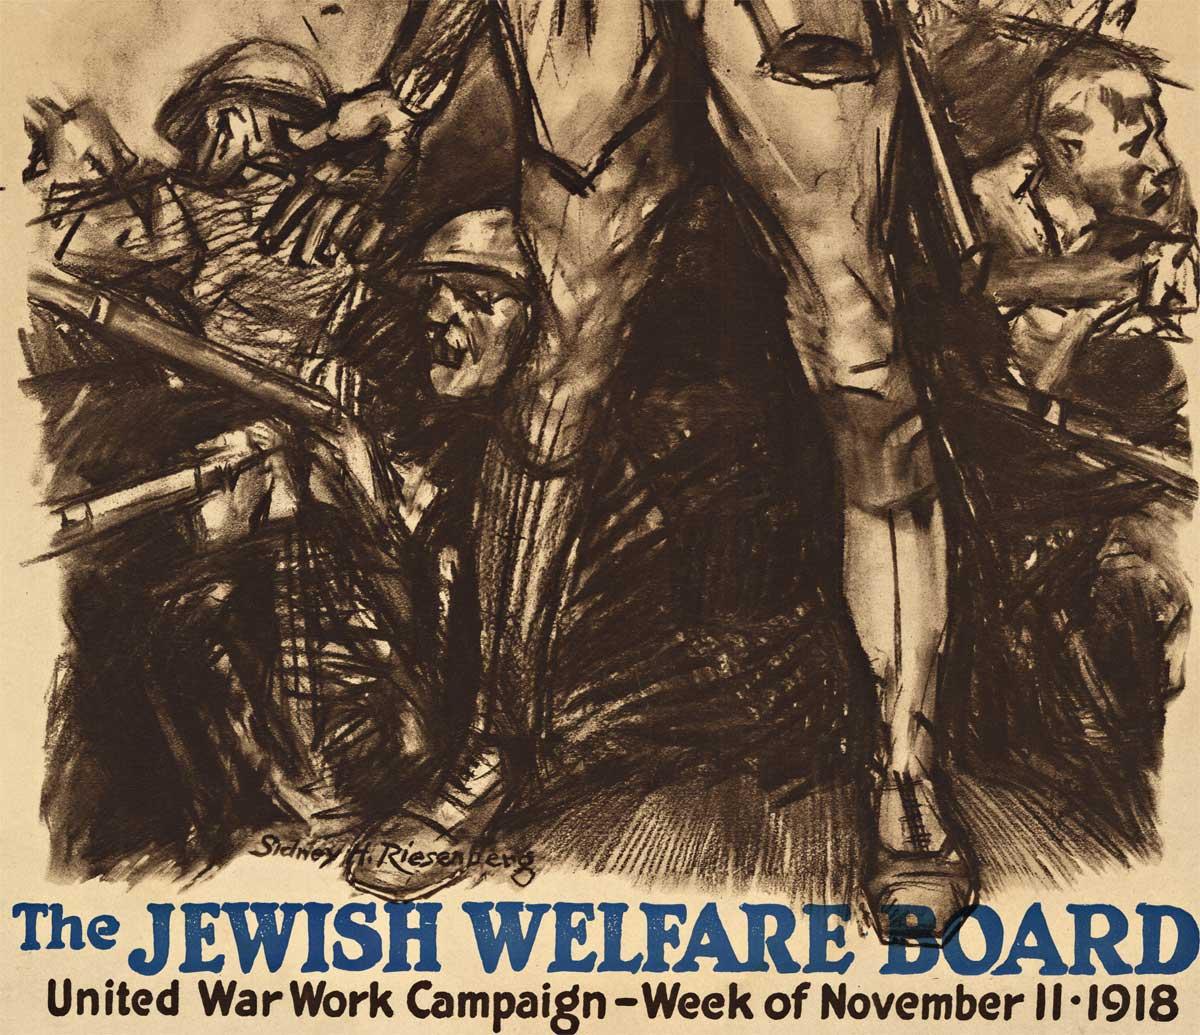 Cartel antiguo original de 1918 del Jewish Welfare Board de la Primera Guerra Mundial - Print realista estadounidense de Sidney Riesenberg